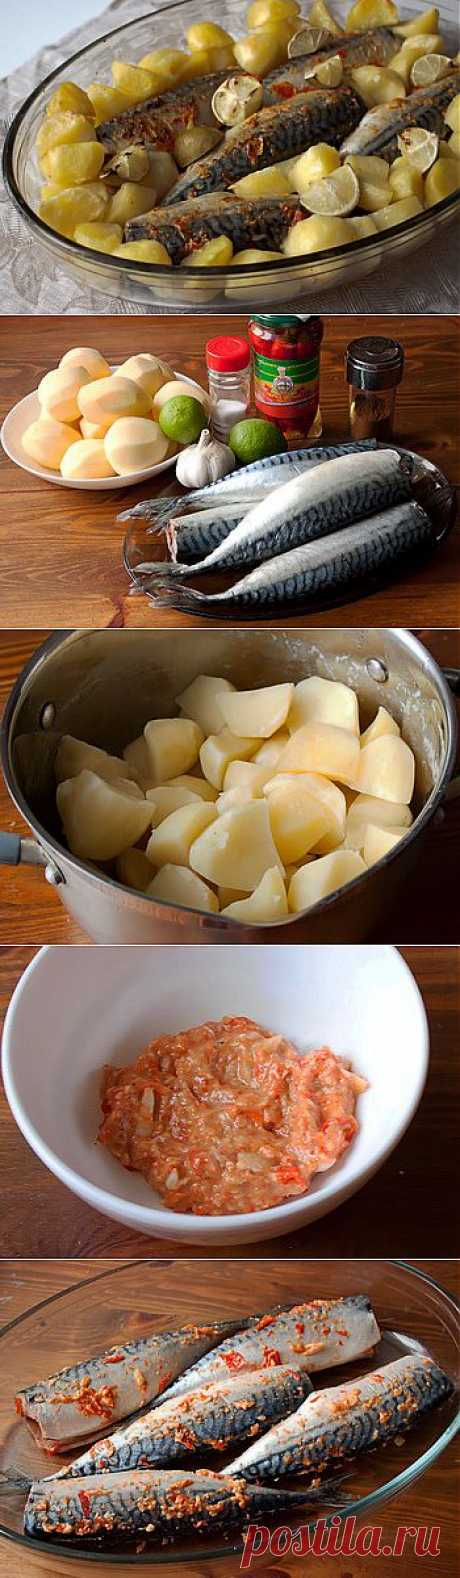 Запеченная острая скумбрия с картофелем.